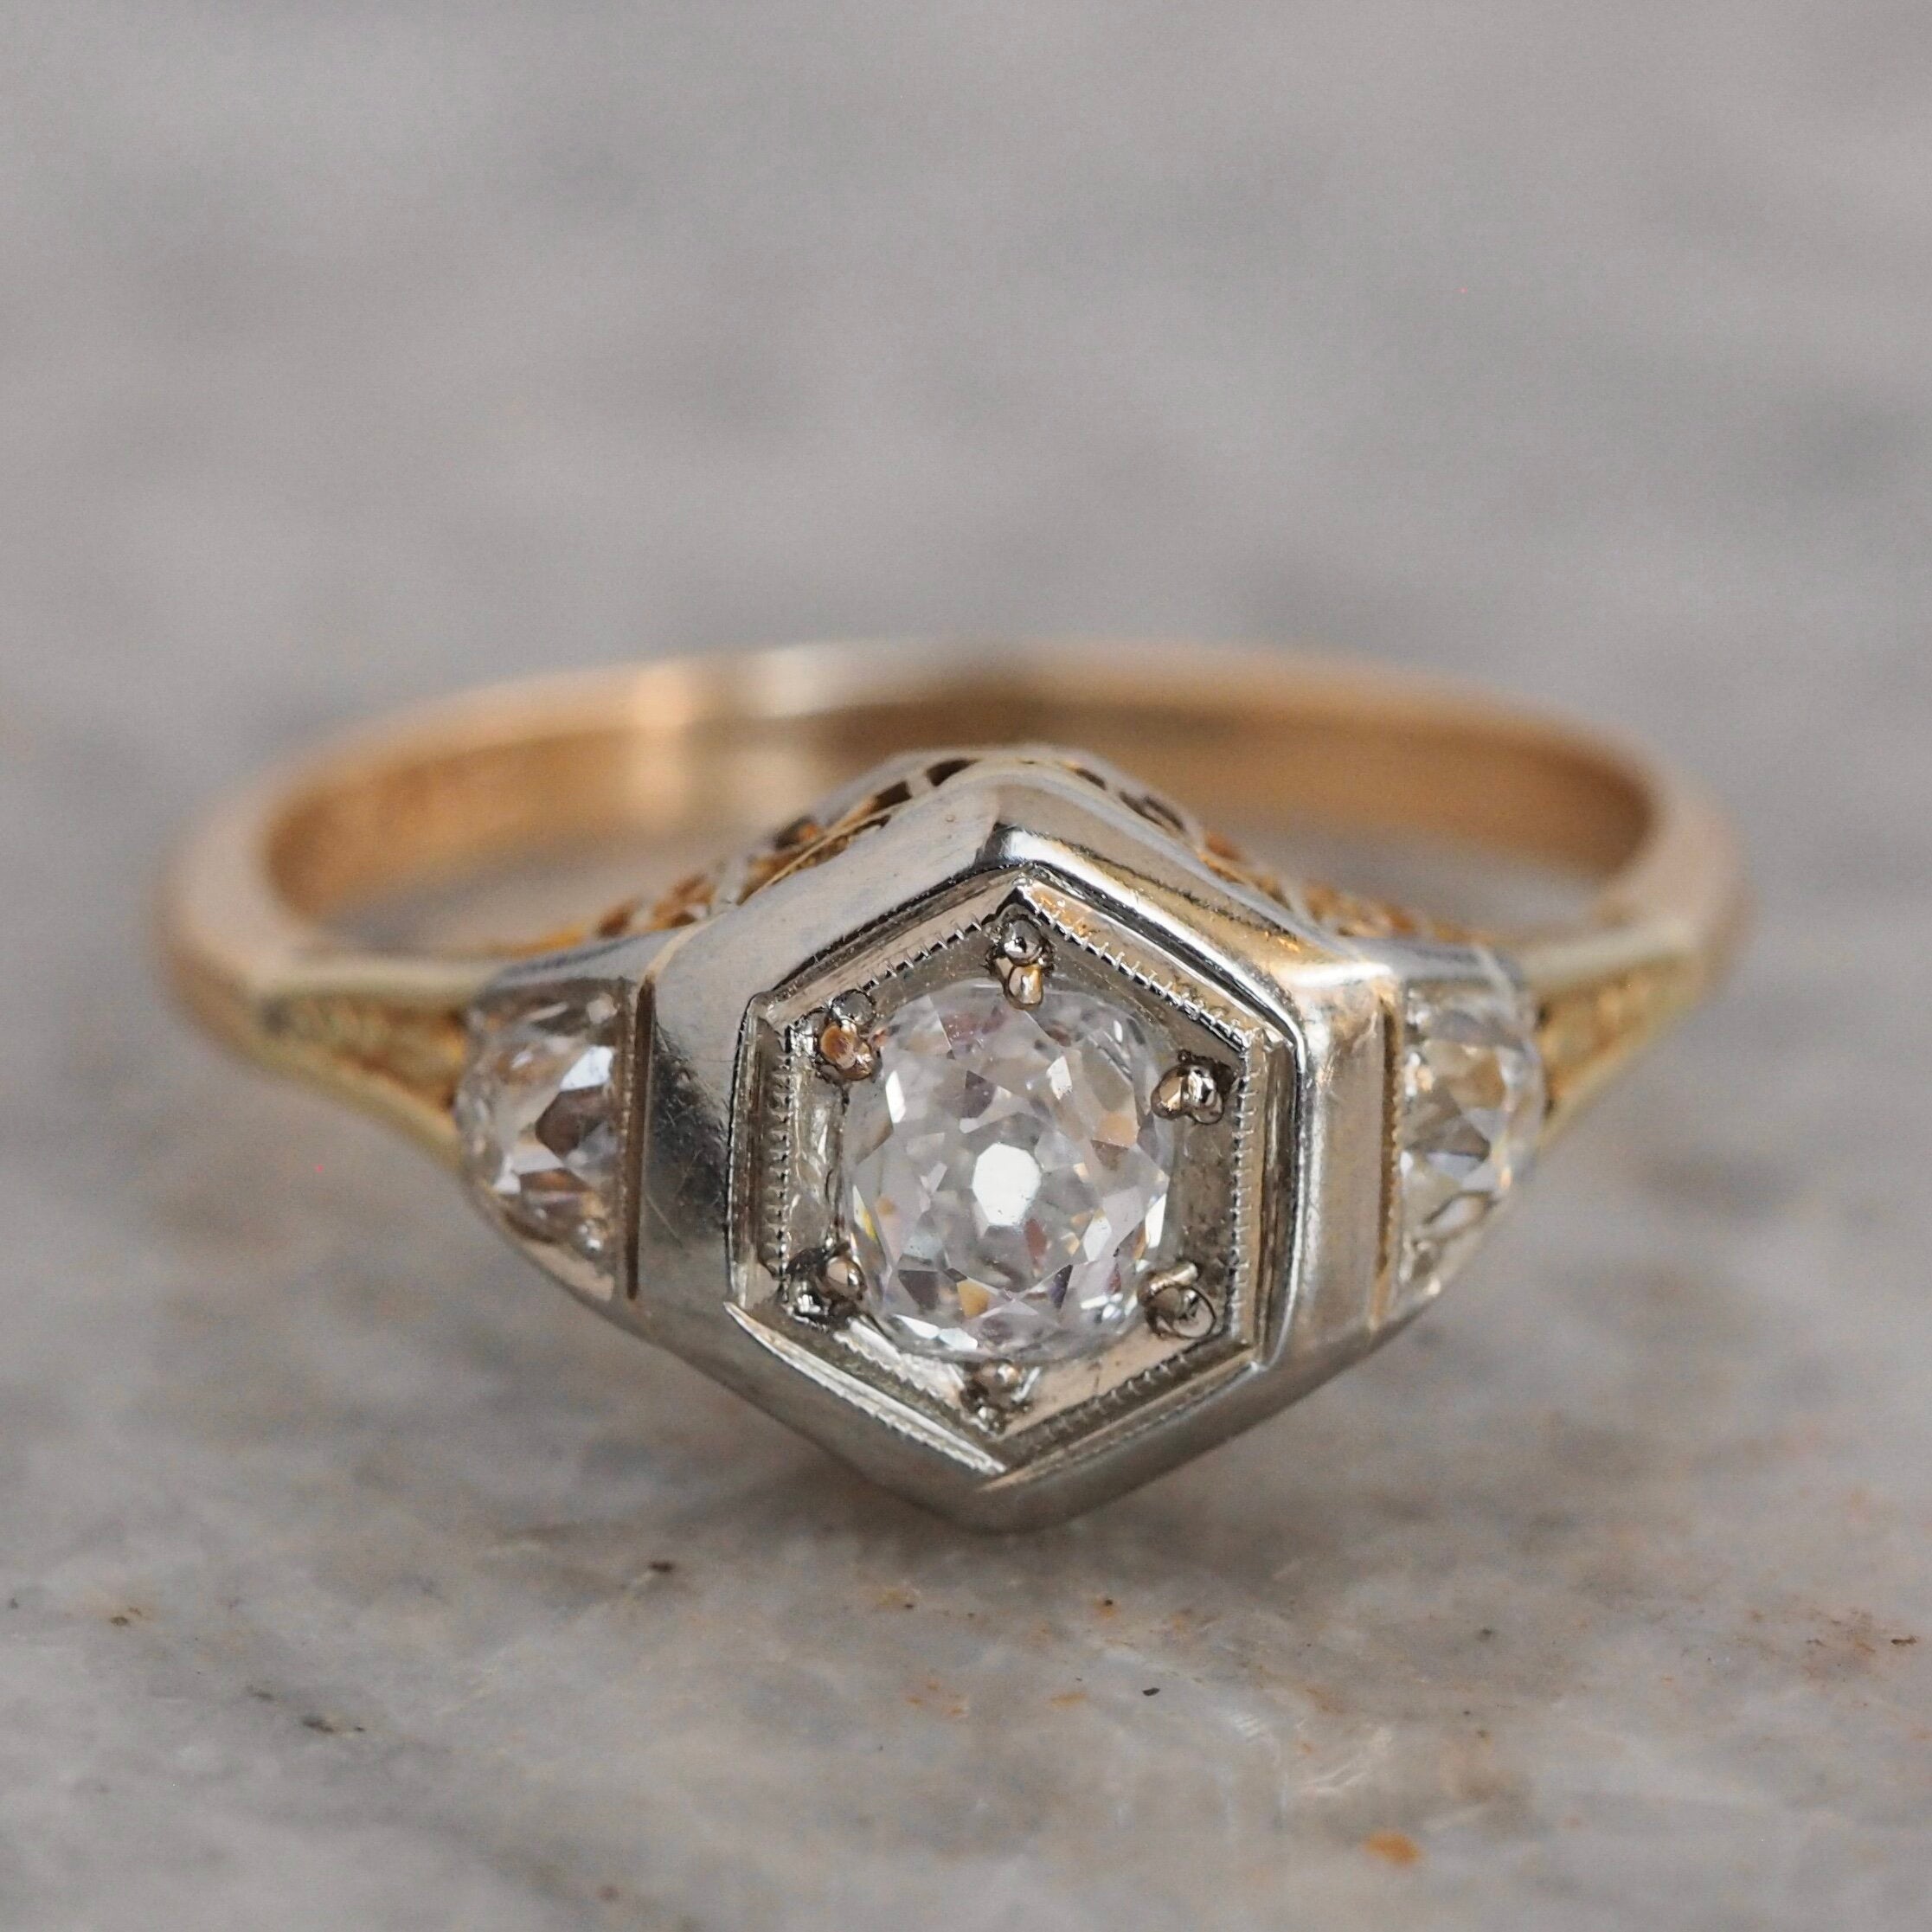 1.8 Carat Round Cut Diamond Engagement Ring 14k White Gold – Balacia